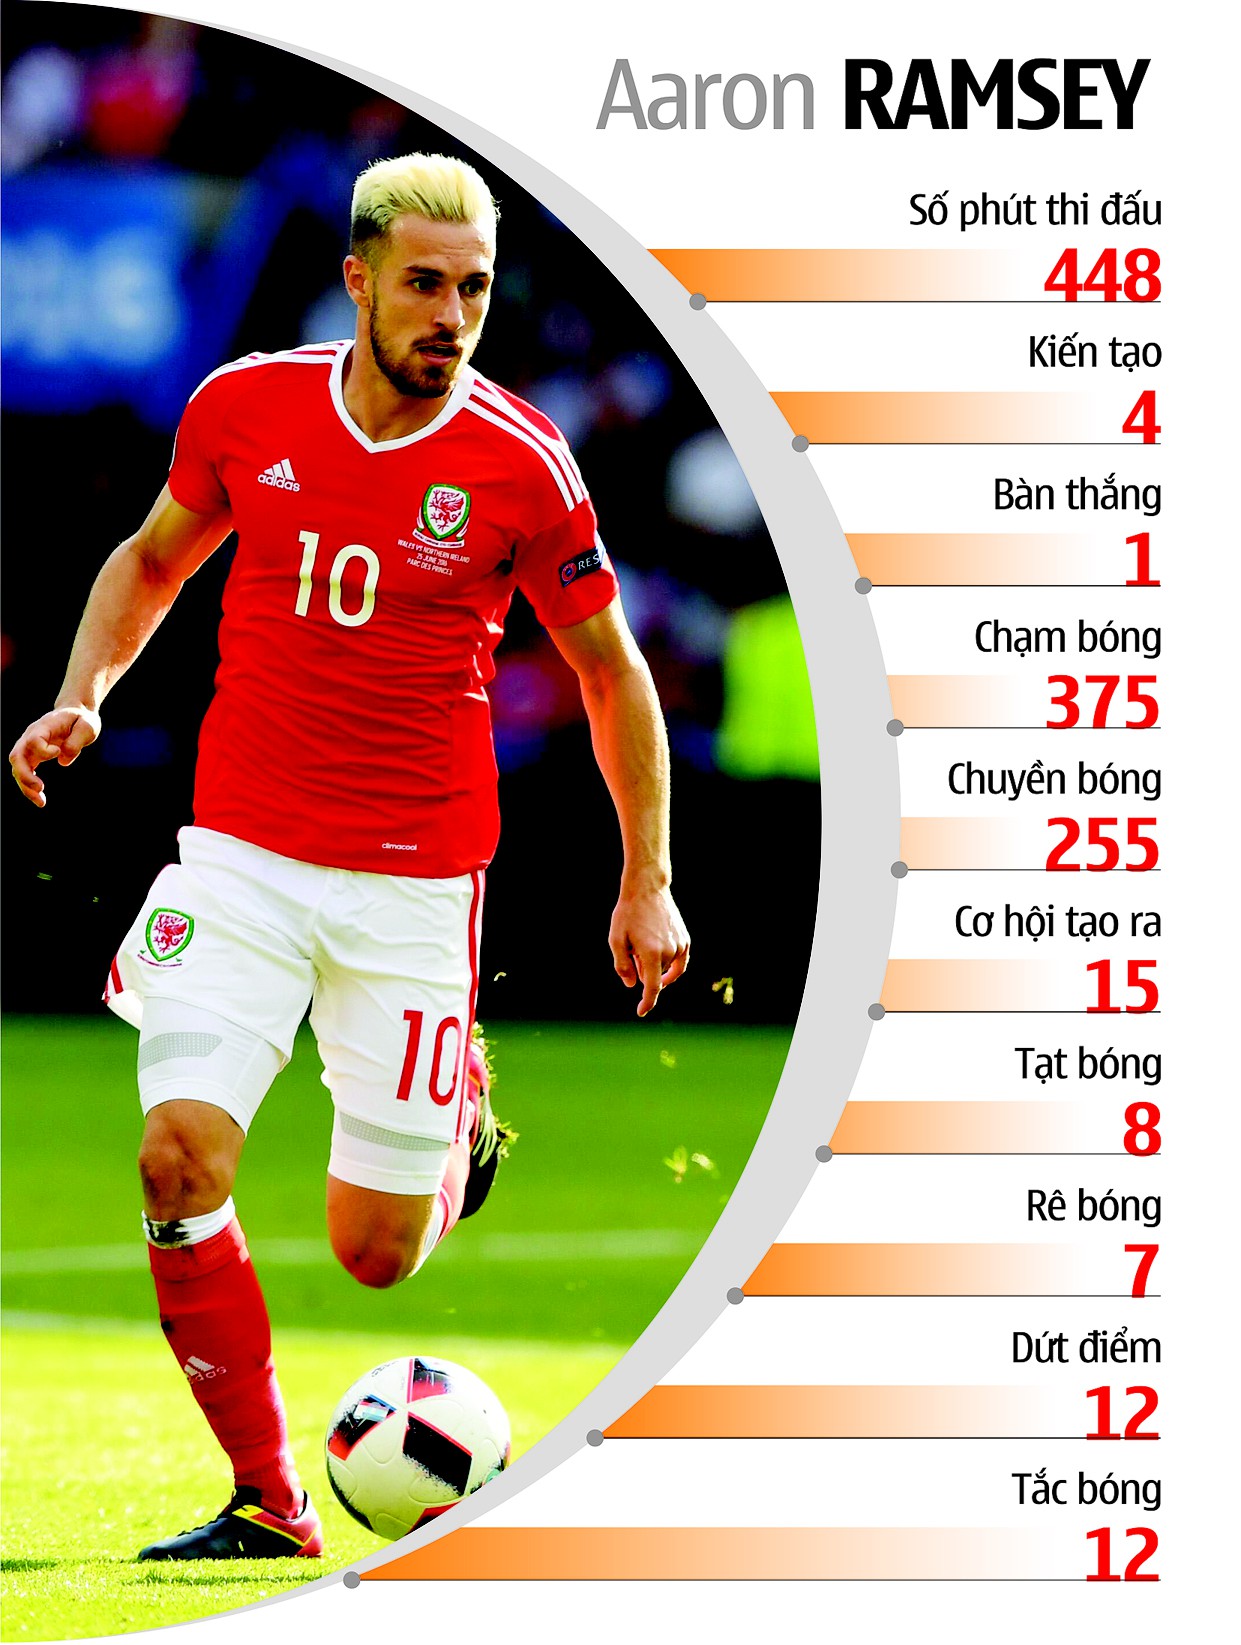 Màn trình diễn của Aaron Ramsey tại EURO 2016 tính đến thời điểm này.